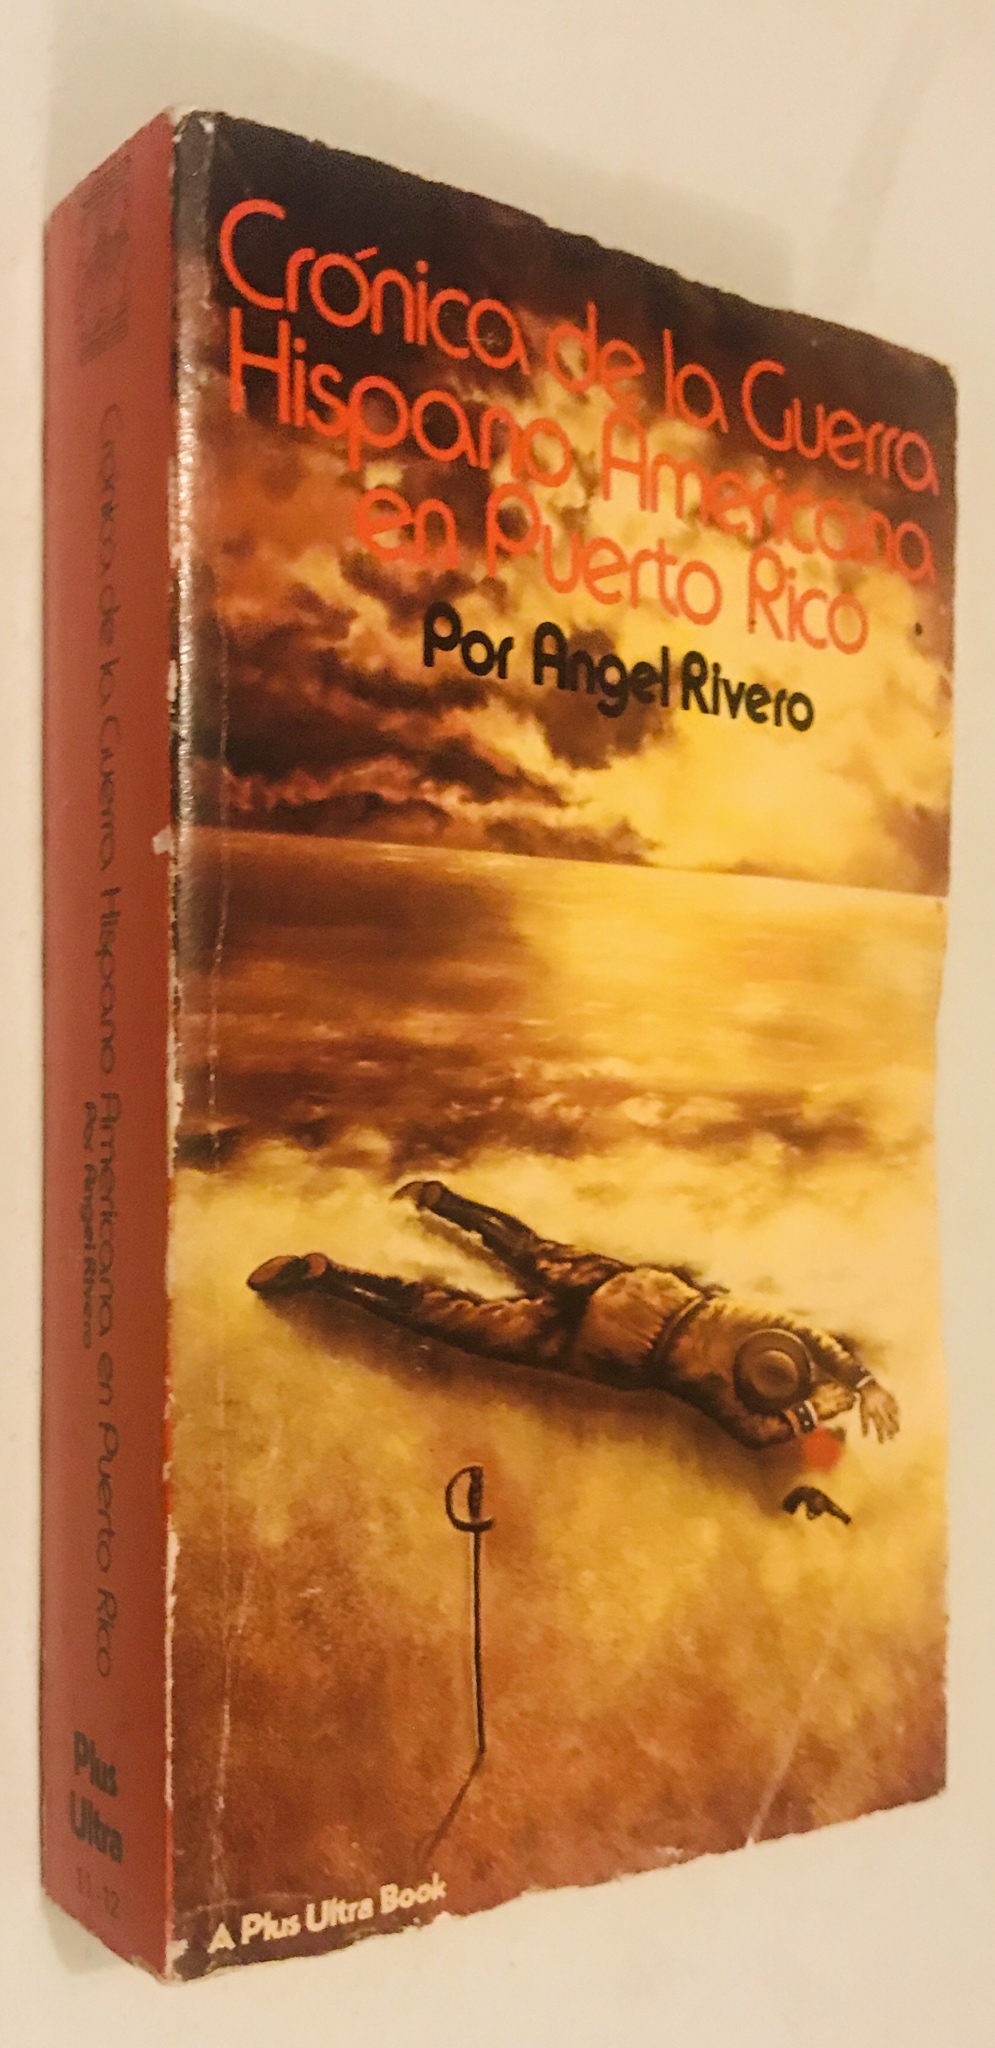 Crónica de la guerra hispanoeamericana en Puerto Rico